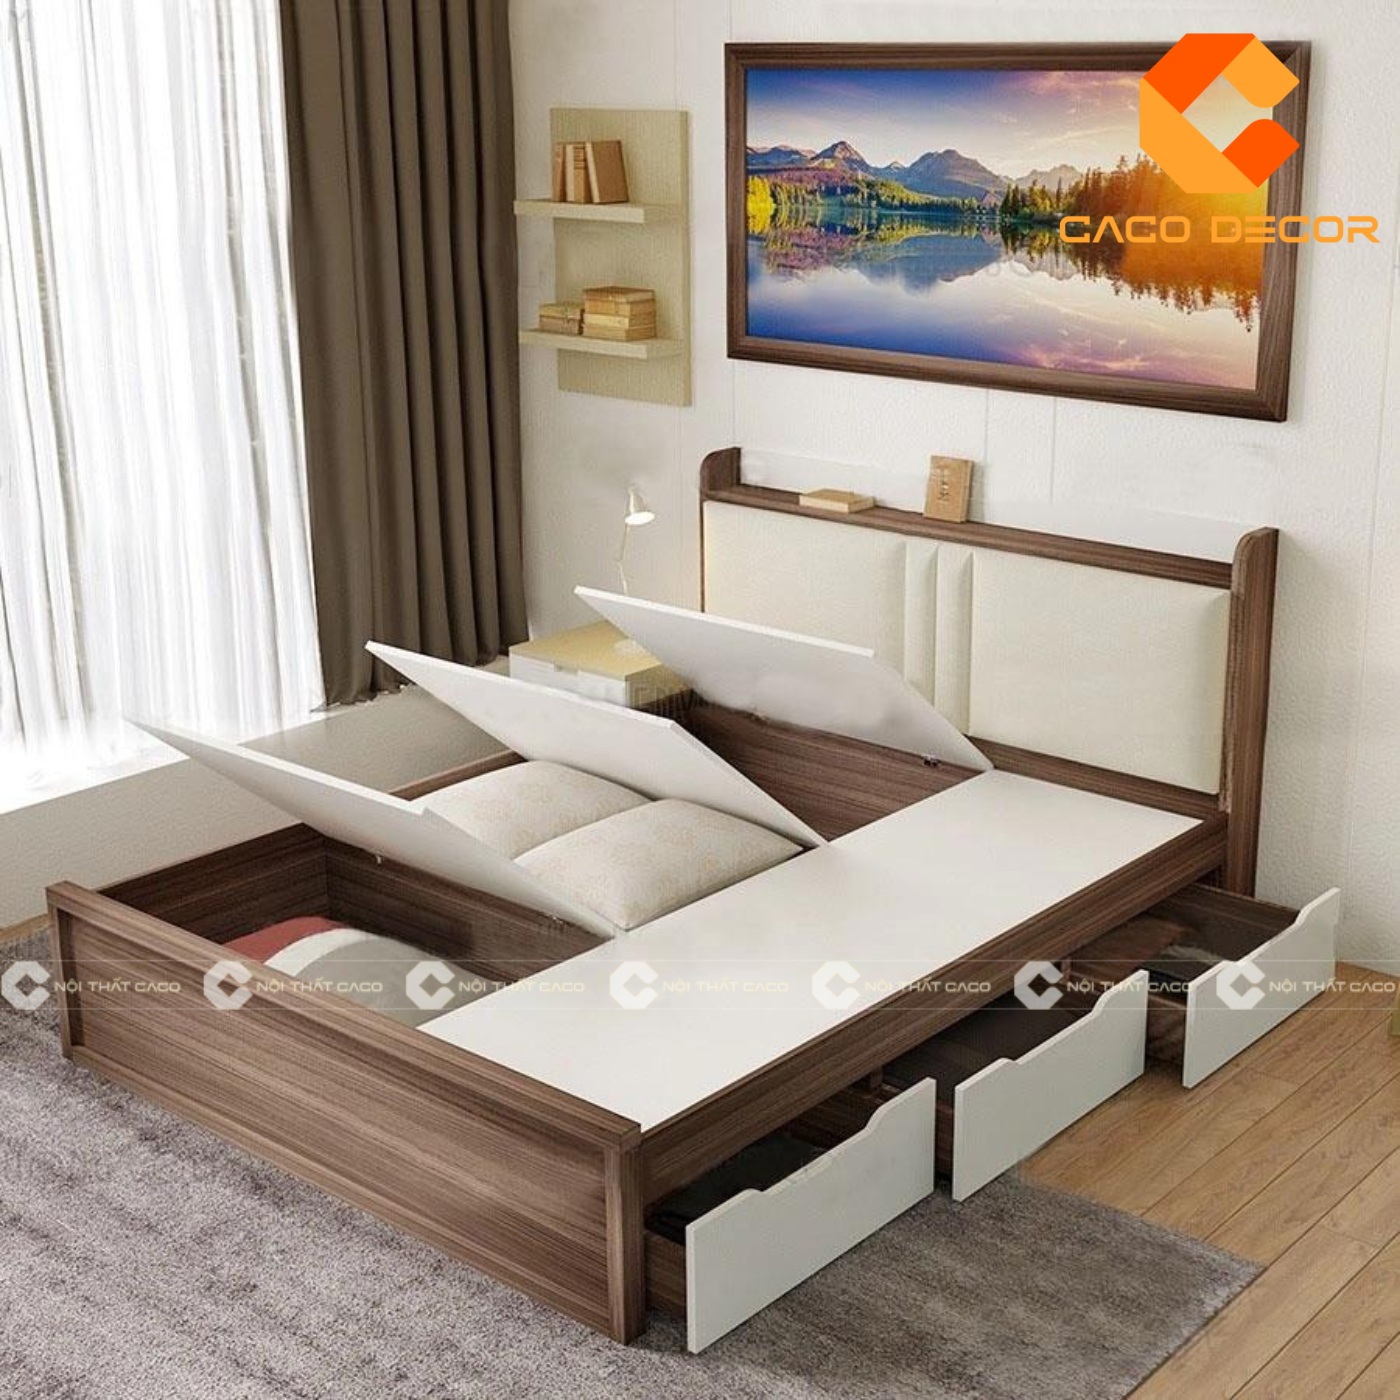 Giường ngủ gỗ công nghiệp đẹp, chất lượng với giá tốt nhất thị trường 21